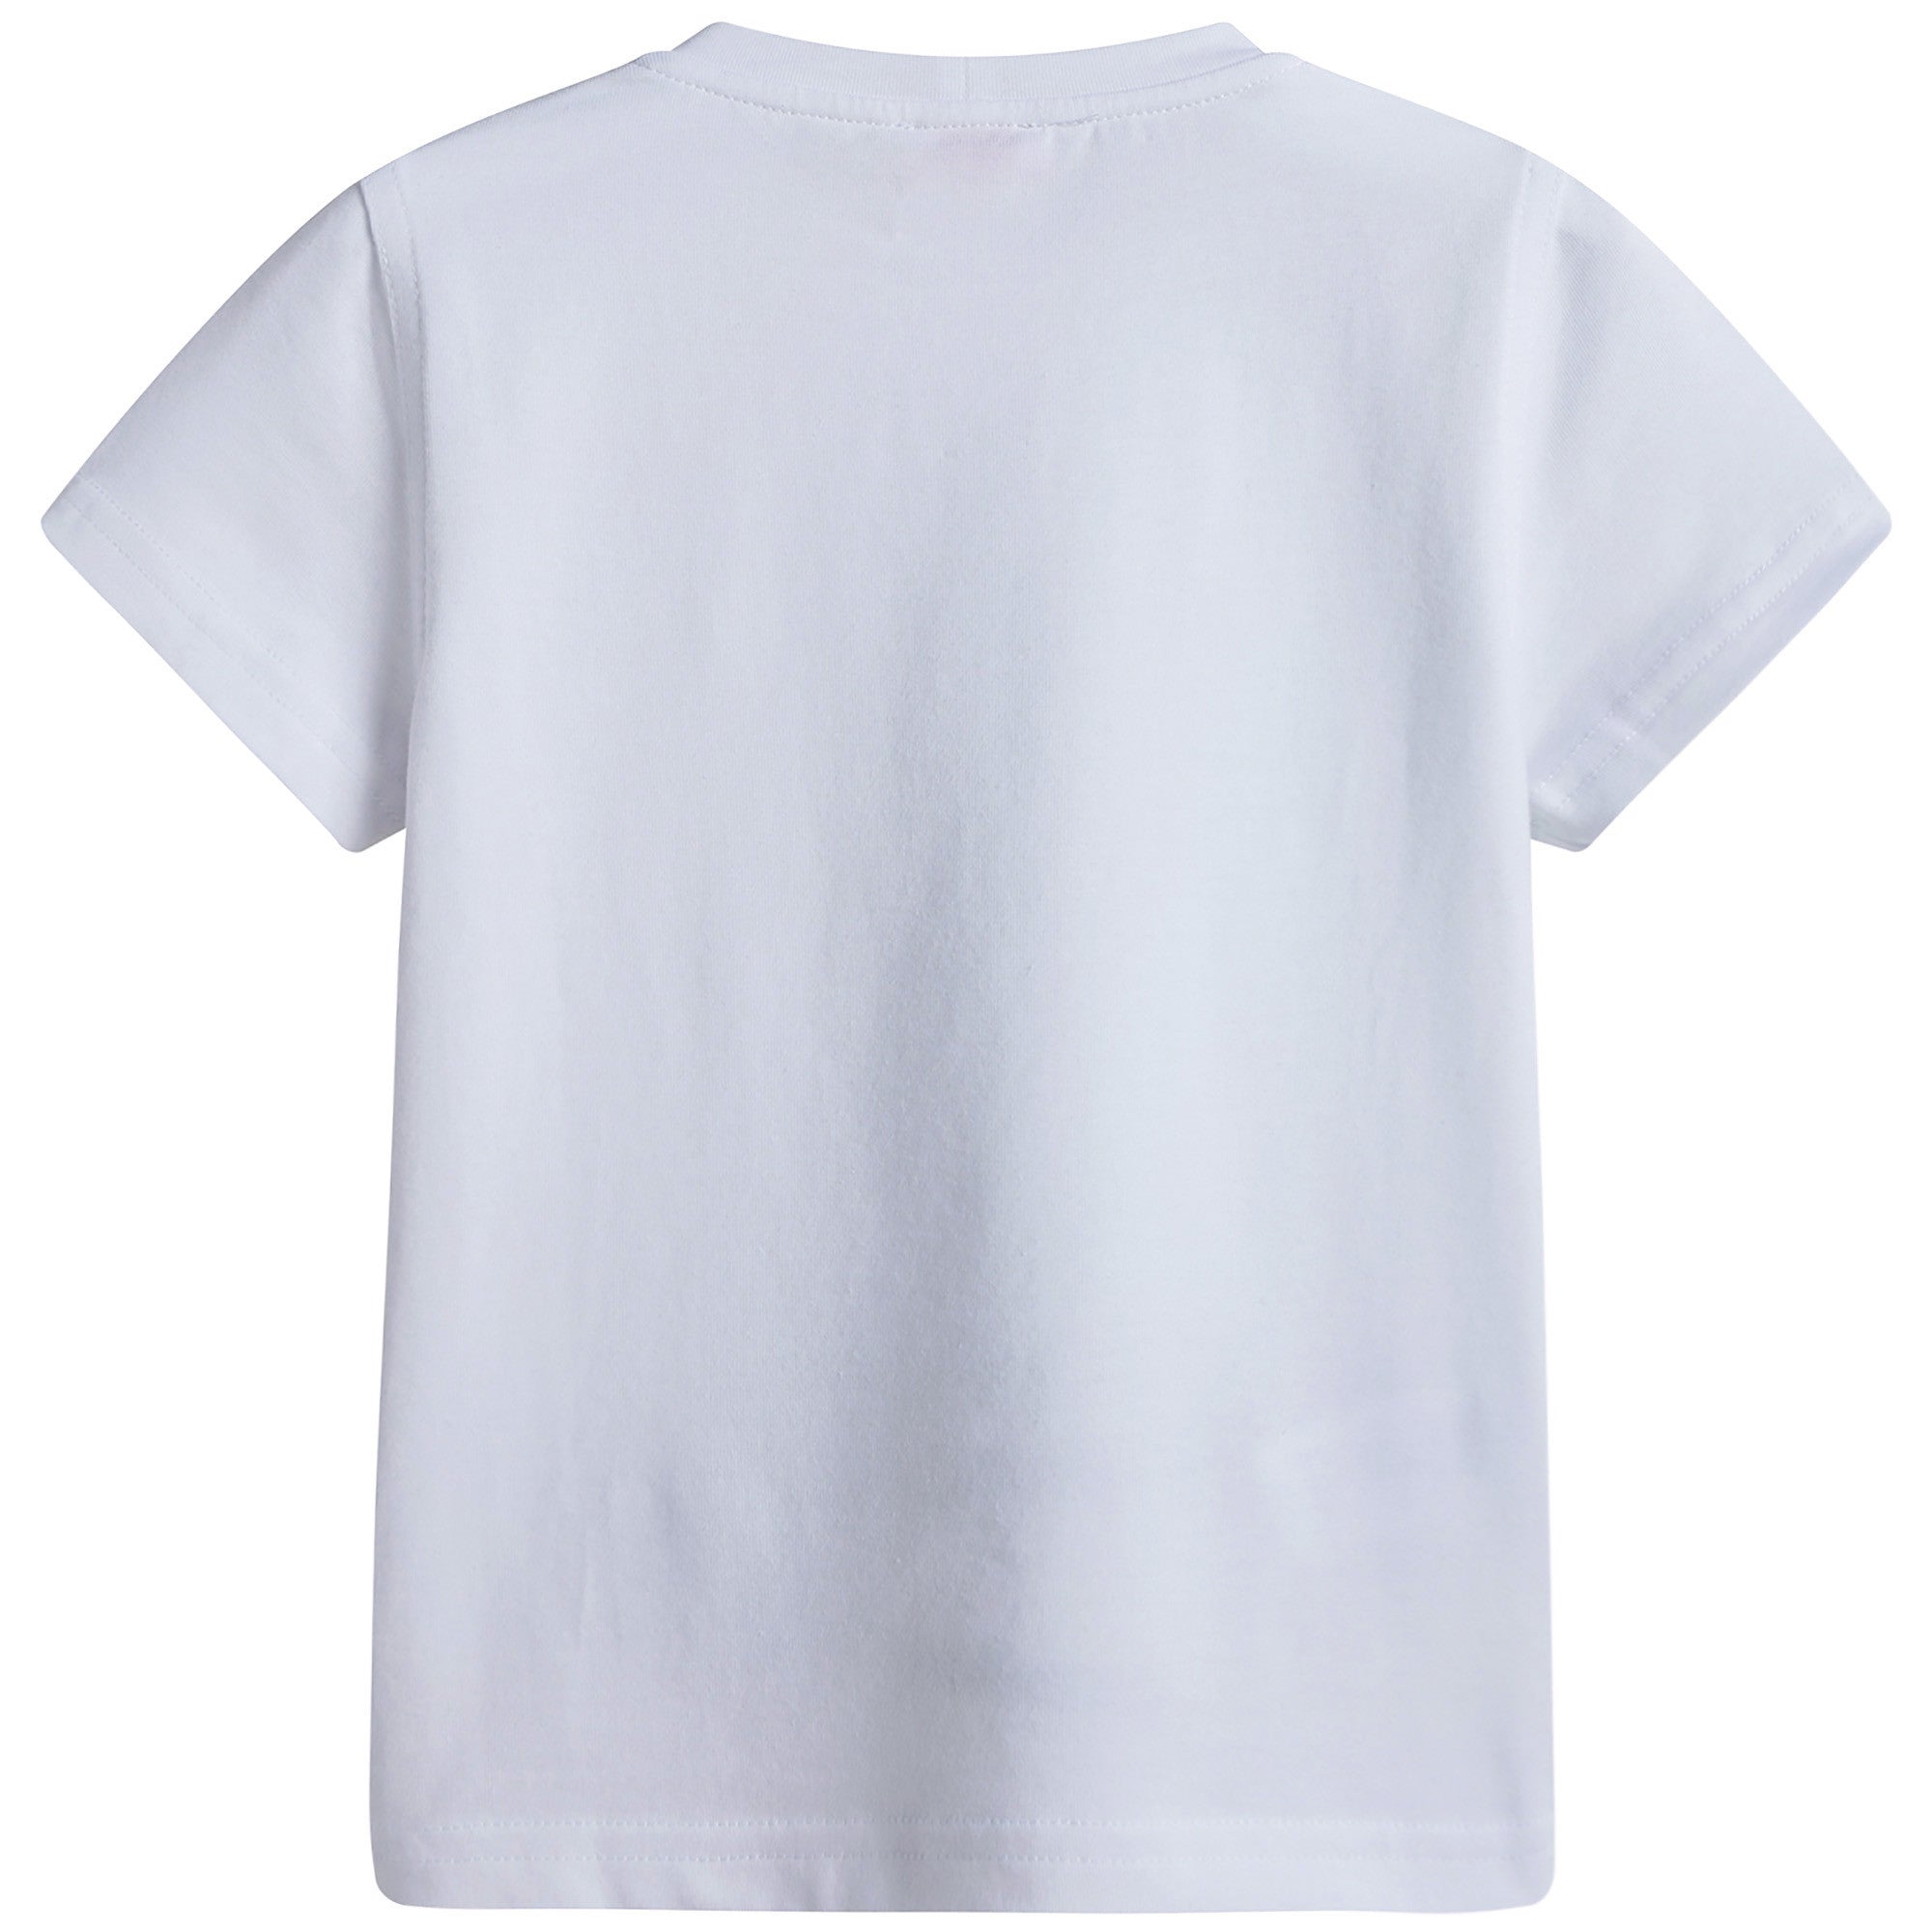 Boys White Cotton Jersey T-Shirt